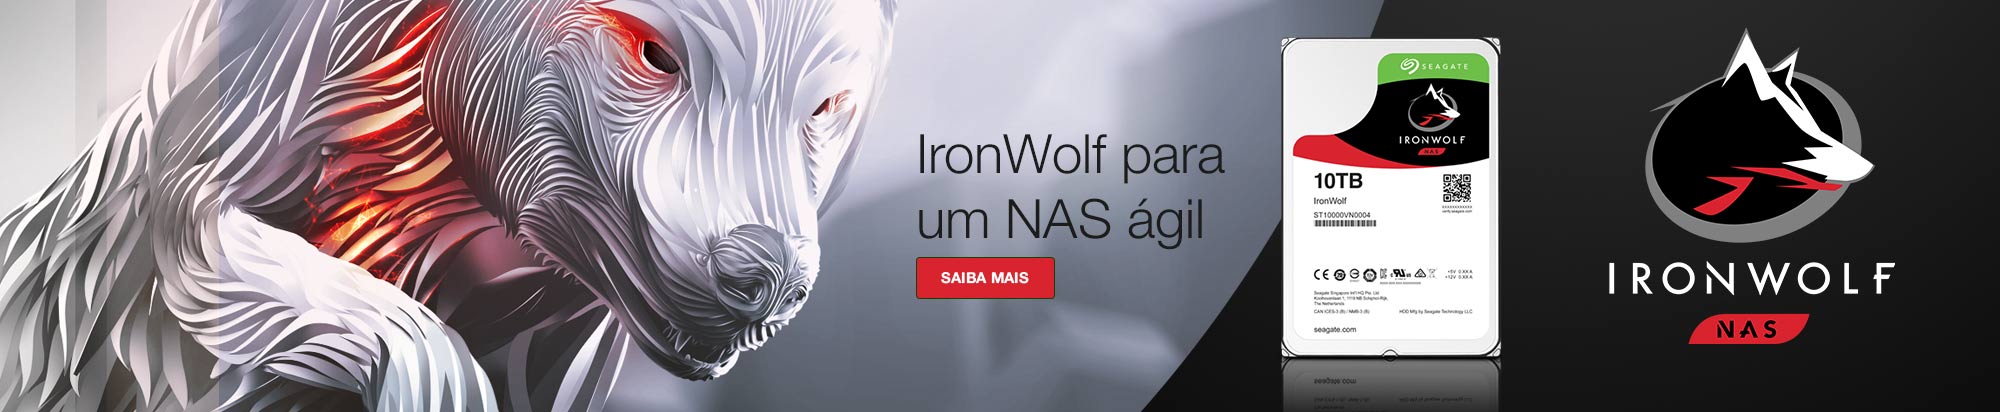 ironwolf